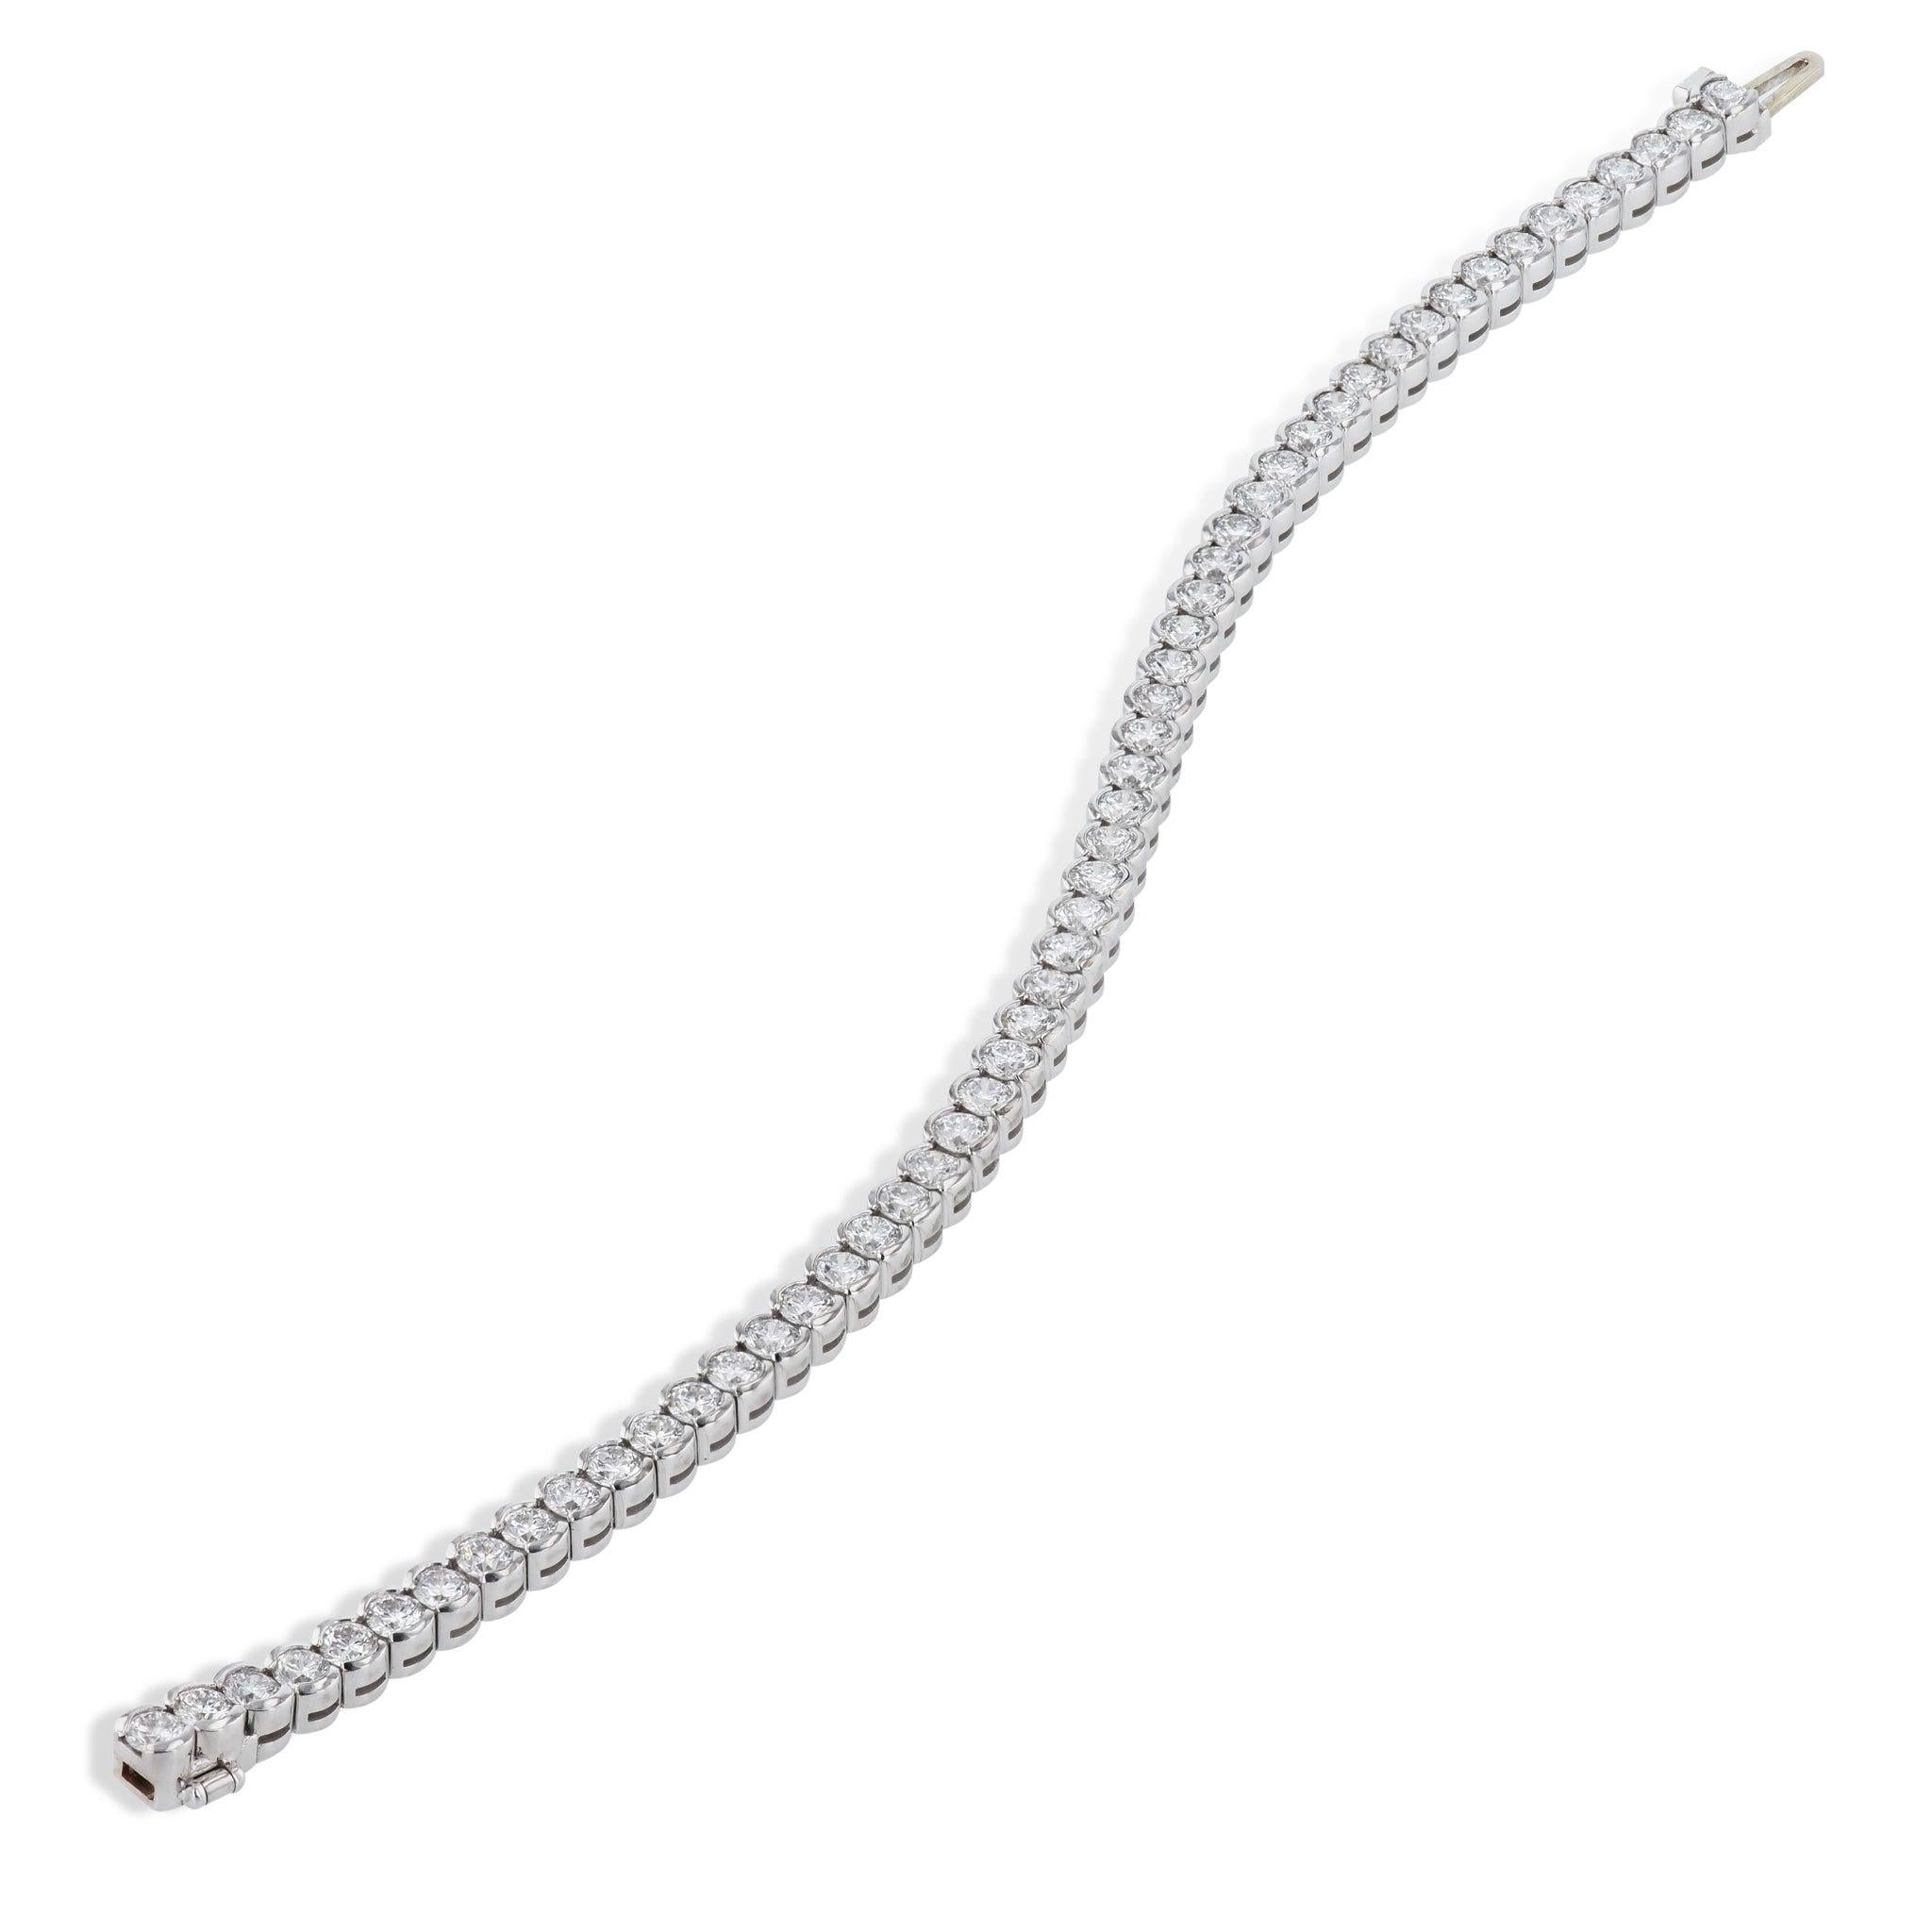 Laissez briller l'éclat de ce bracelet de tennis en or blanc 18kt avec ses 54 diamants éblouissants - délicatement sertis en demi-lune. Fabriqué à la main avec le plus grand soin par H & H Jewels, c'est un accessoire tout à fait envoûtant, digne des